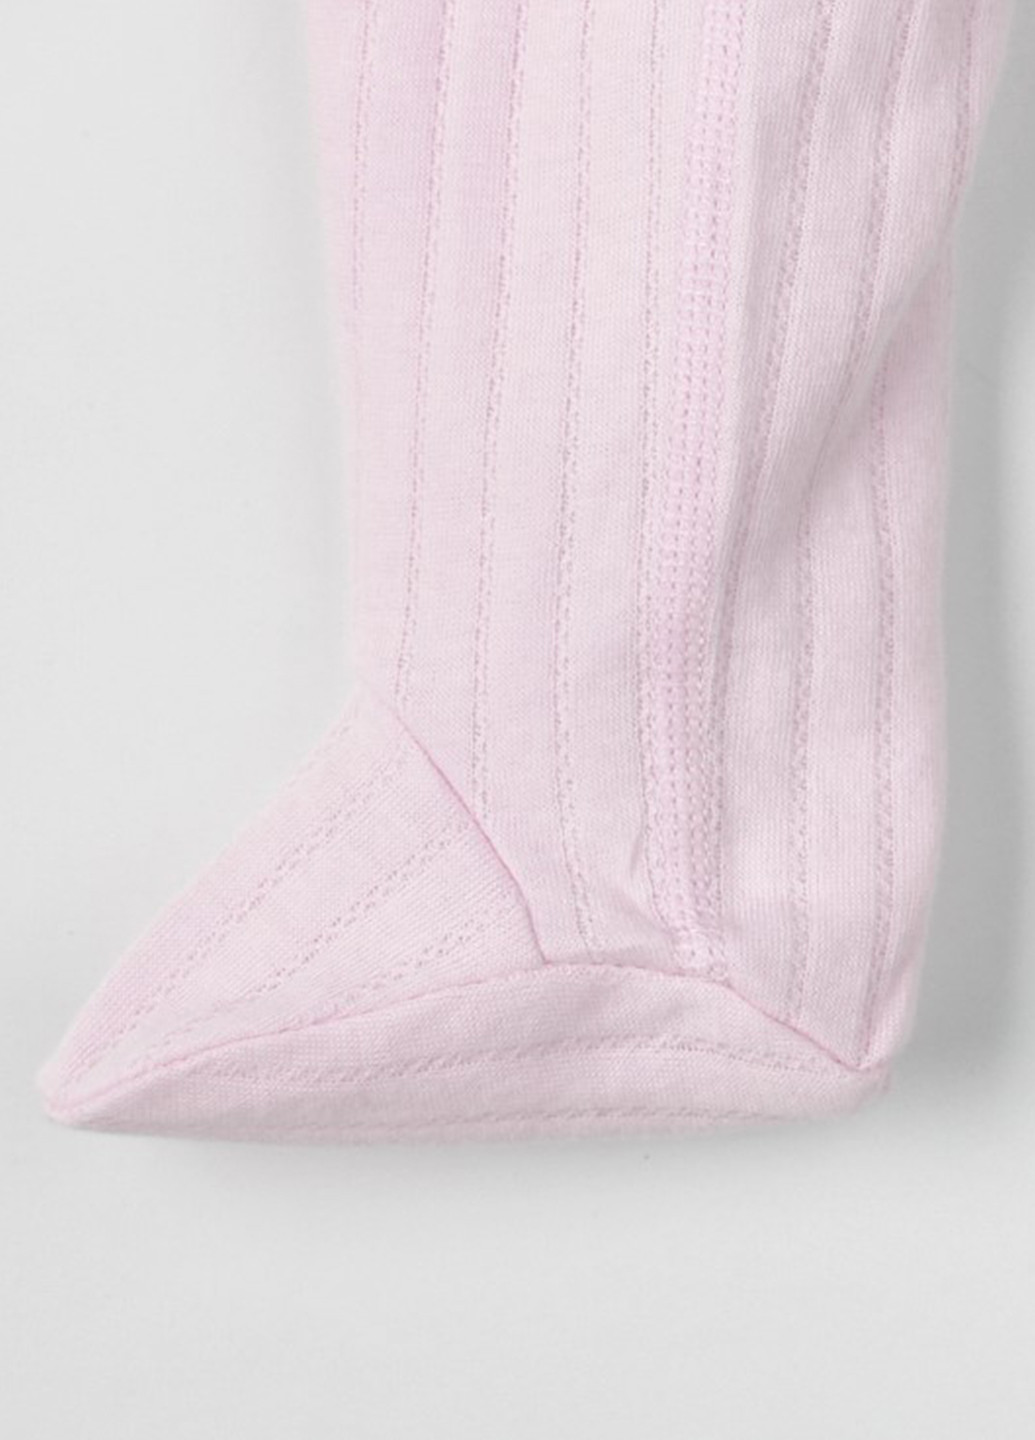 KRAKO штани-повзунки рожеві "ажур" рожевий повсякденний виробництво - Україна